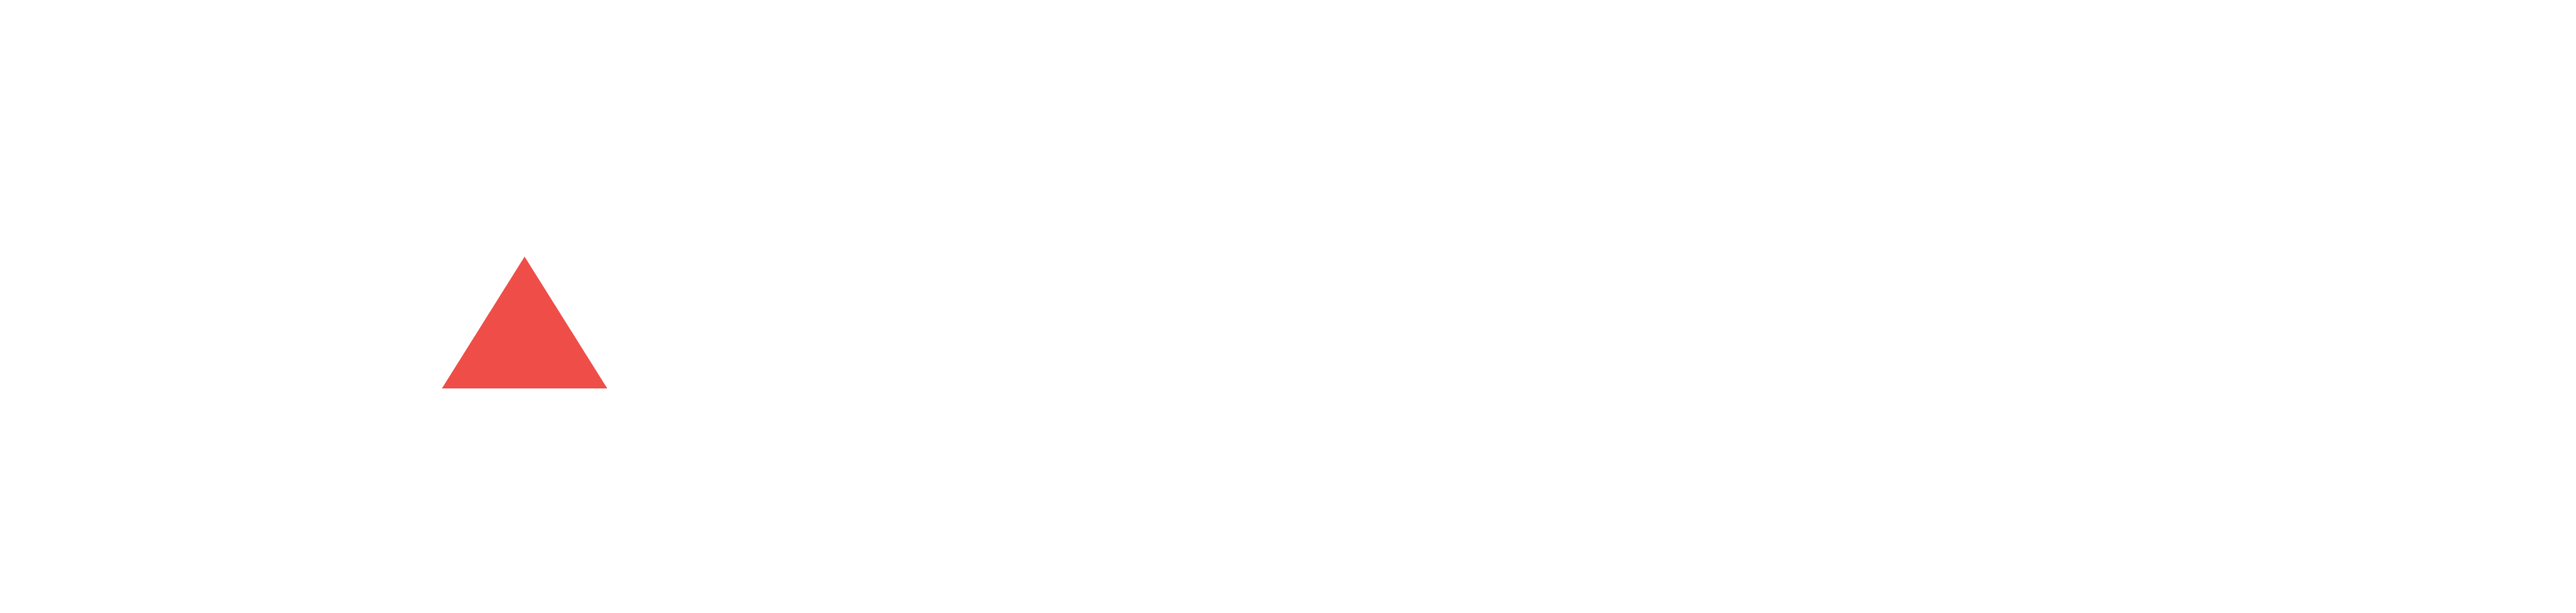 ADS Digitech Solutions: Digital Marketing agency in Varanasi